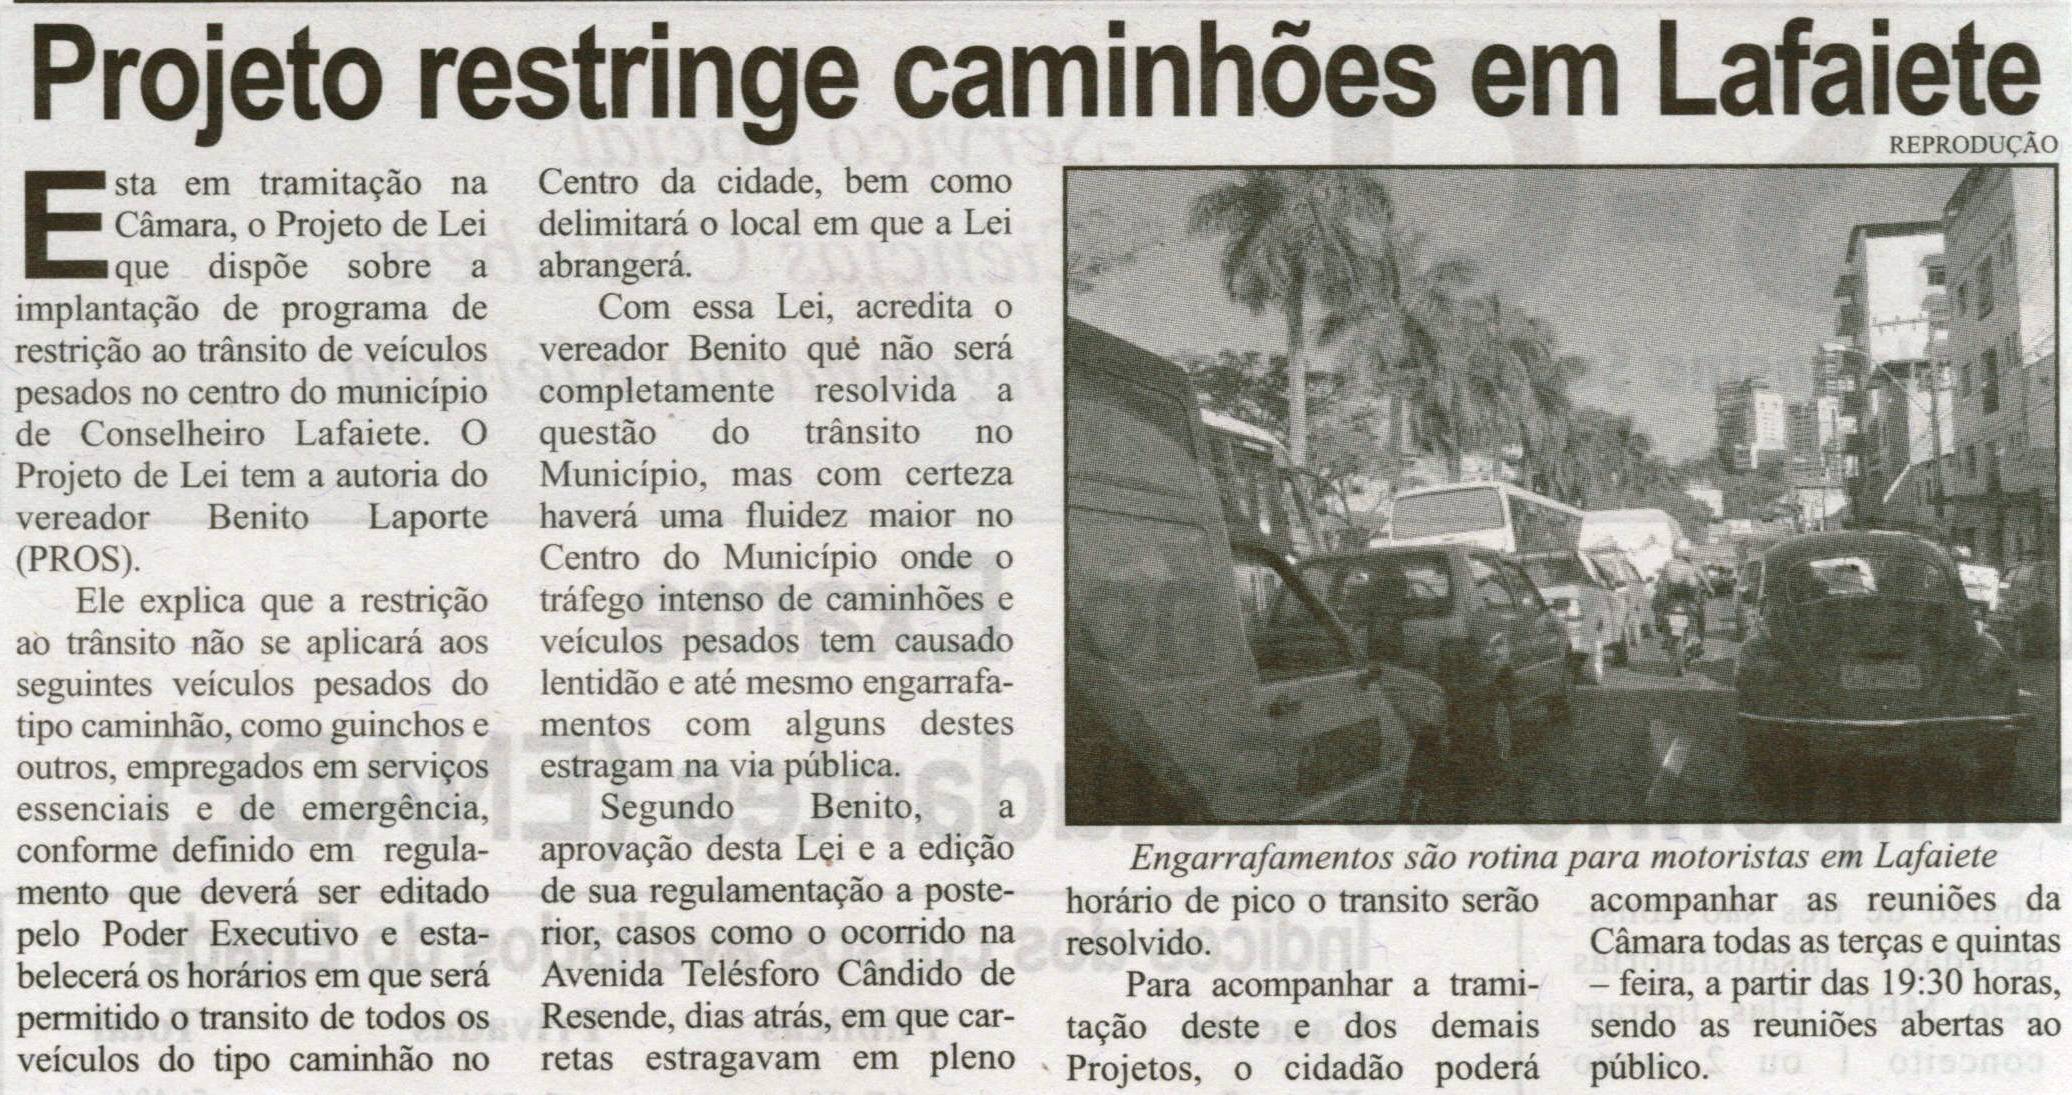 Projeto restringe caminhões em Lafaiete. Correio de Minas, Conselheiro Lafaiete, 12 out. 2013, p. 07.